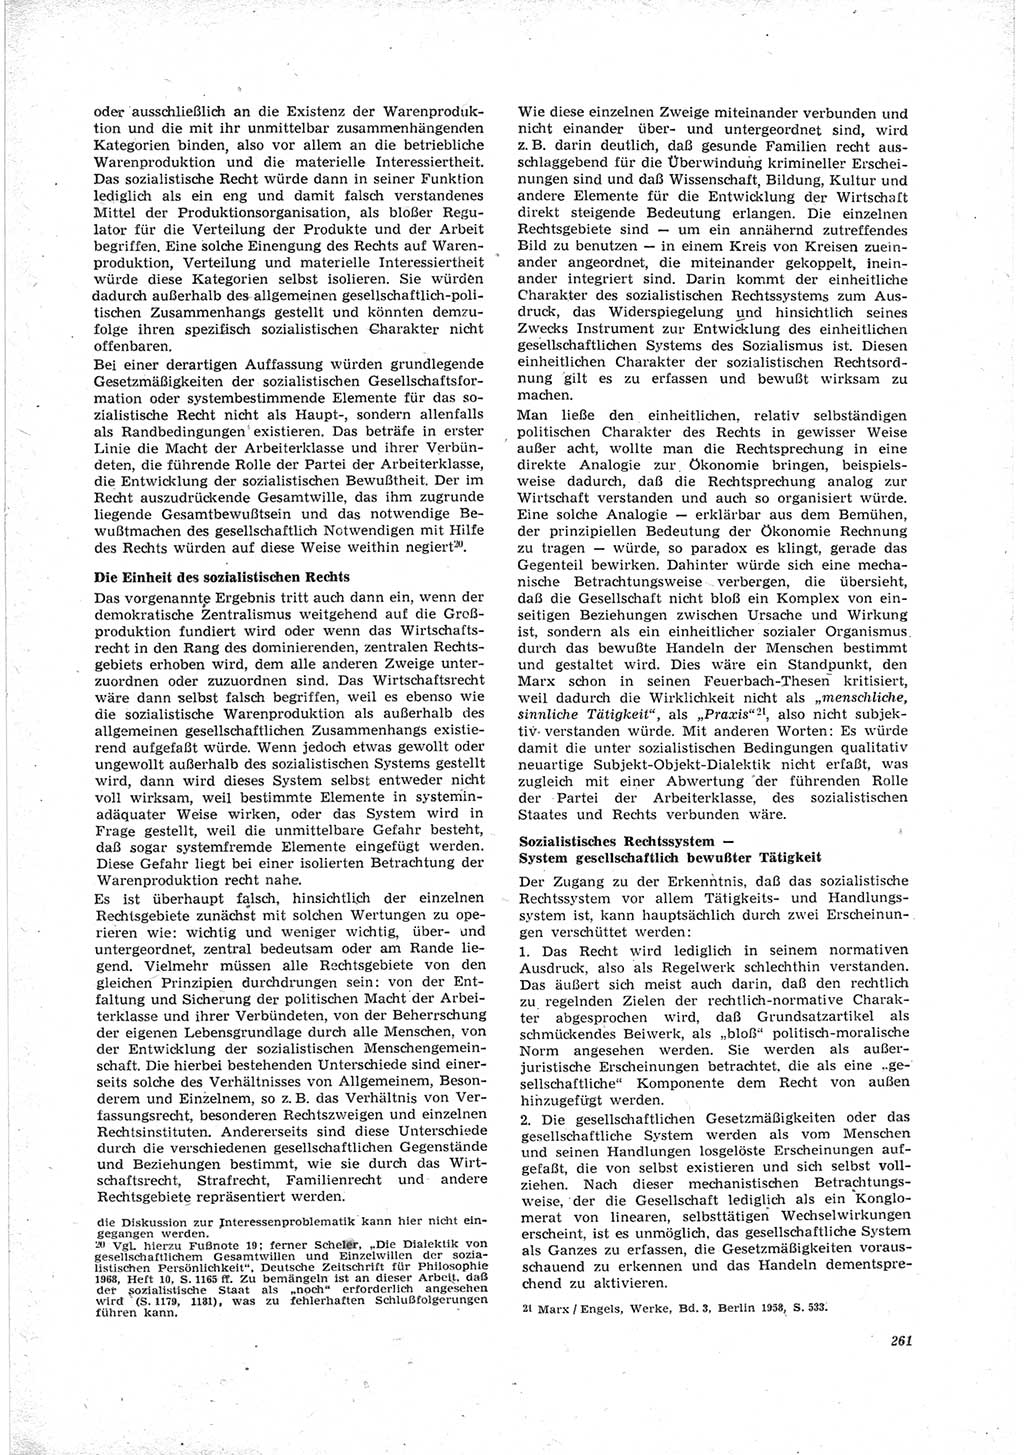 Neue Justiz (NJ), Zeitschrift für Recht und Rechtswissenschaft [Deutsche Demokratische Republik (DDR)], 23. Jahrgang 1969, Seite 261 (NJ DDR 1969, S. 261)